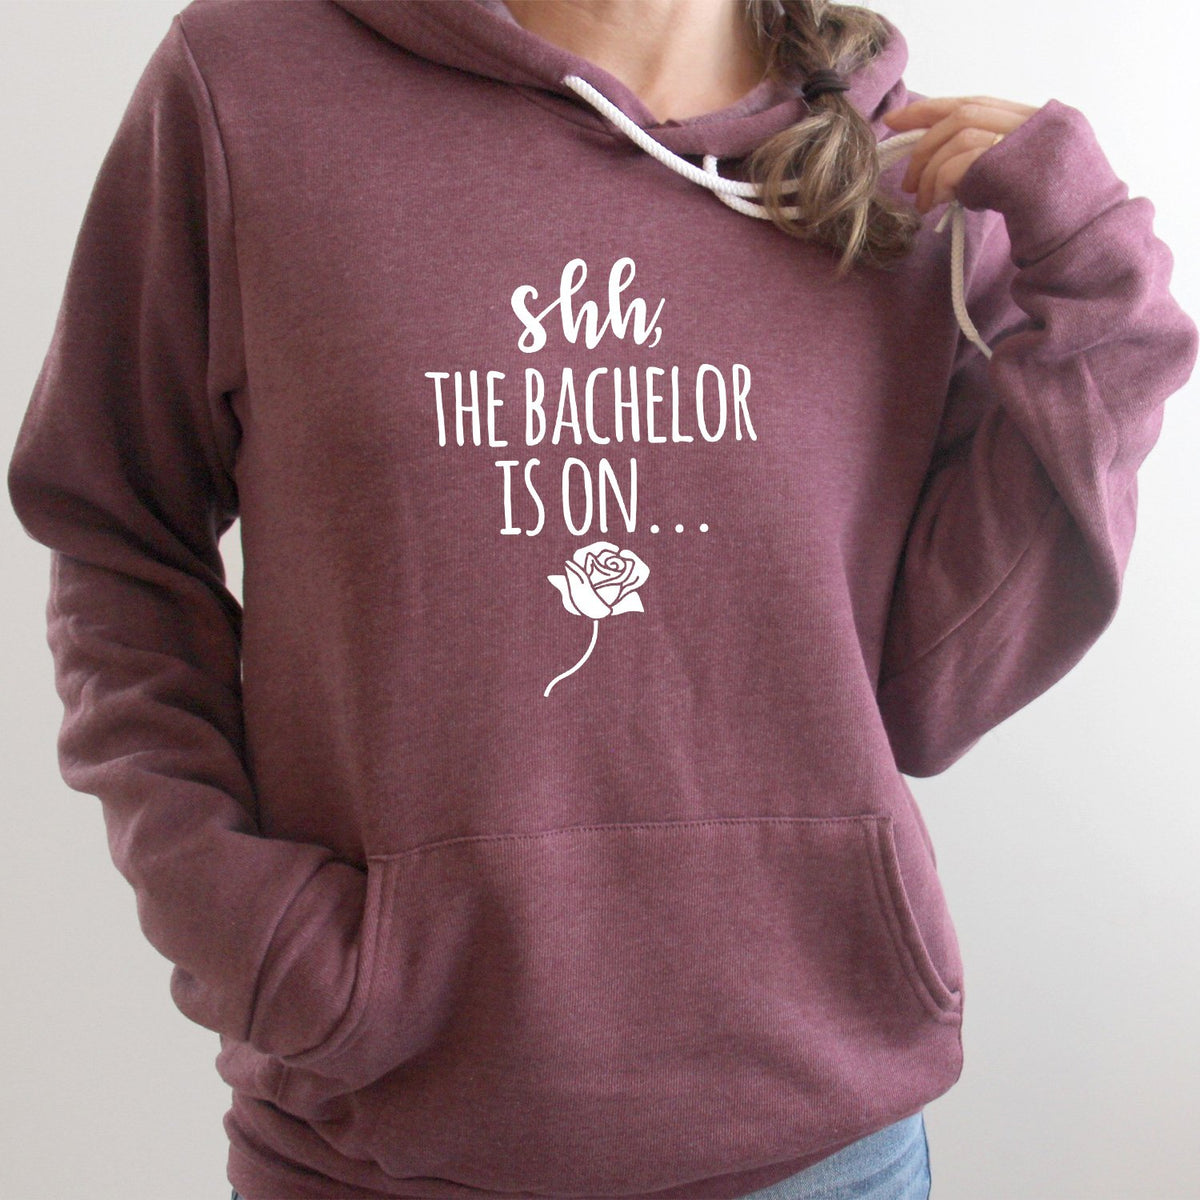 Shh The Bachelor is On - Hoodie Sweatshirt